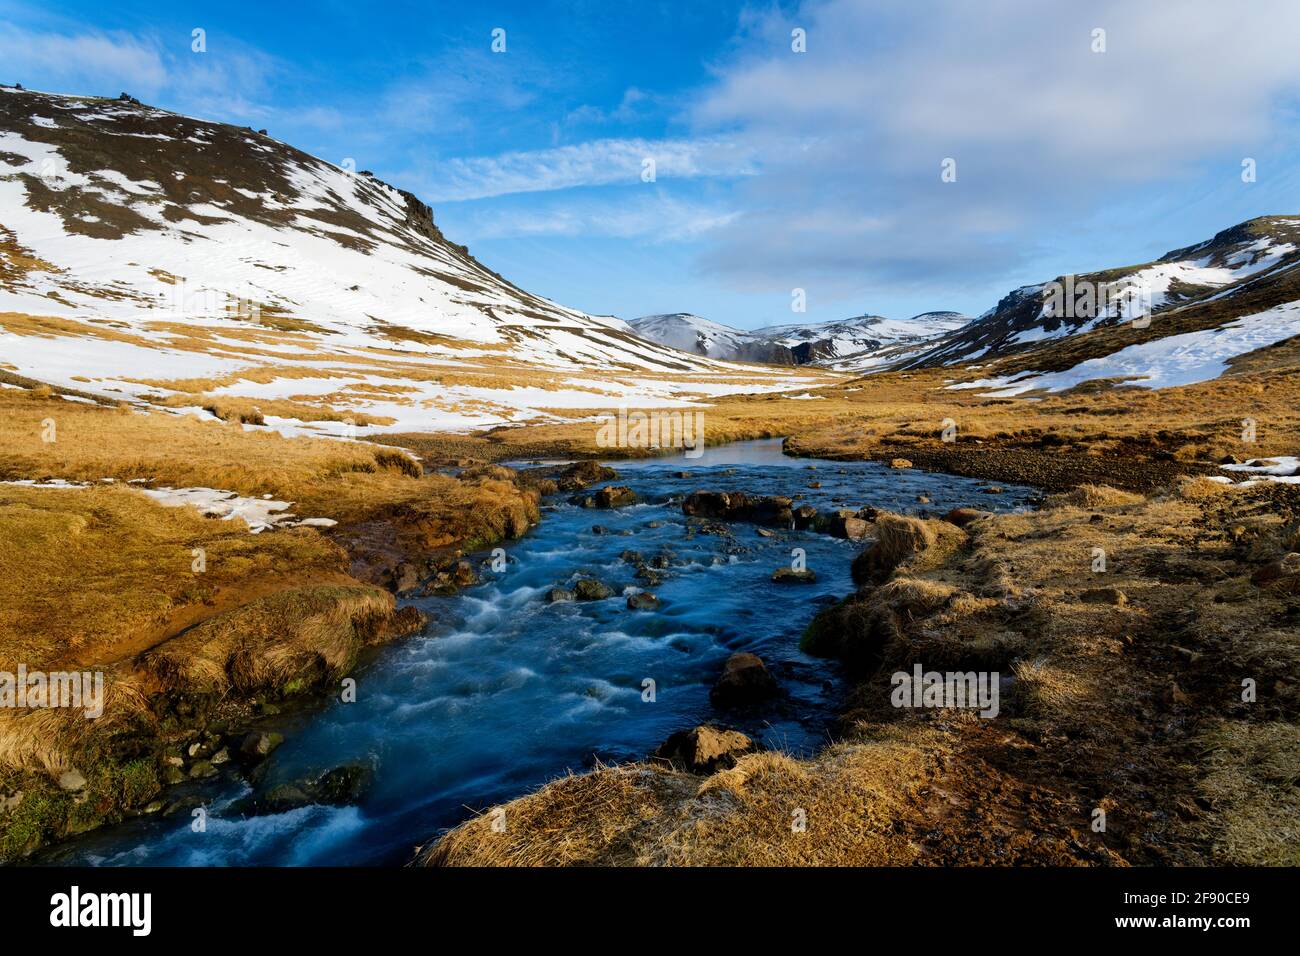 Paysage avec rivière et collines enneigées, Islande Banque D'Images